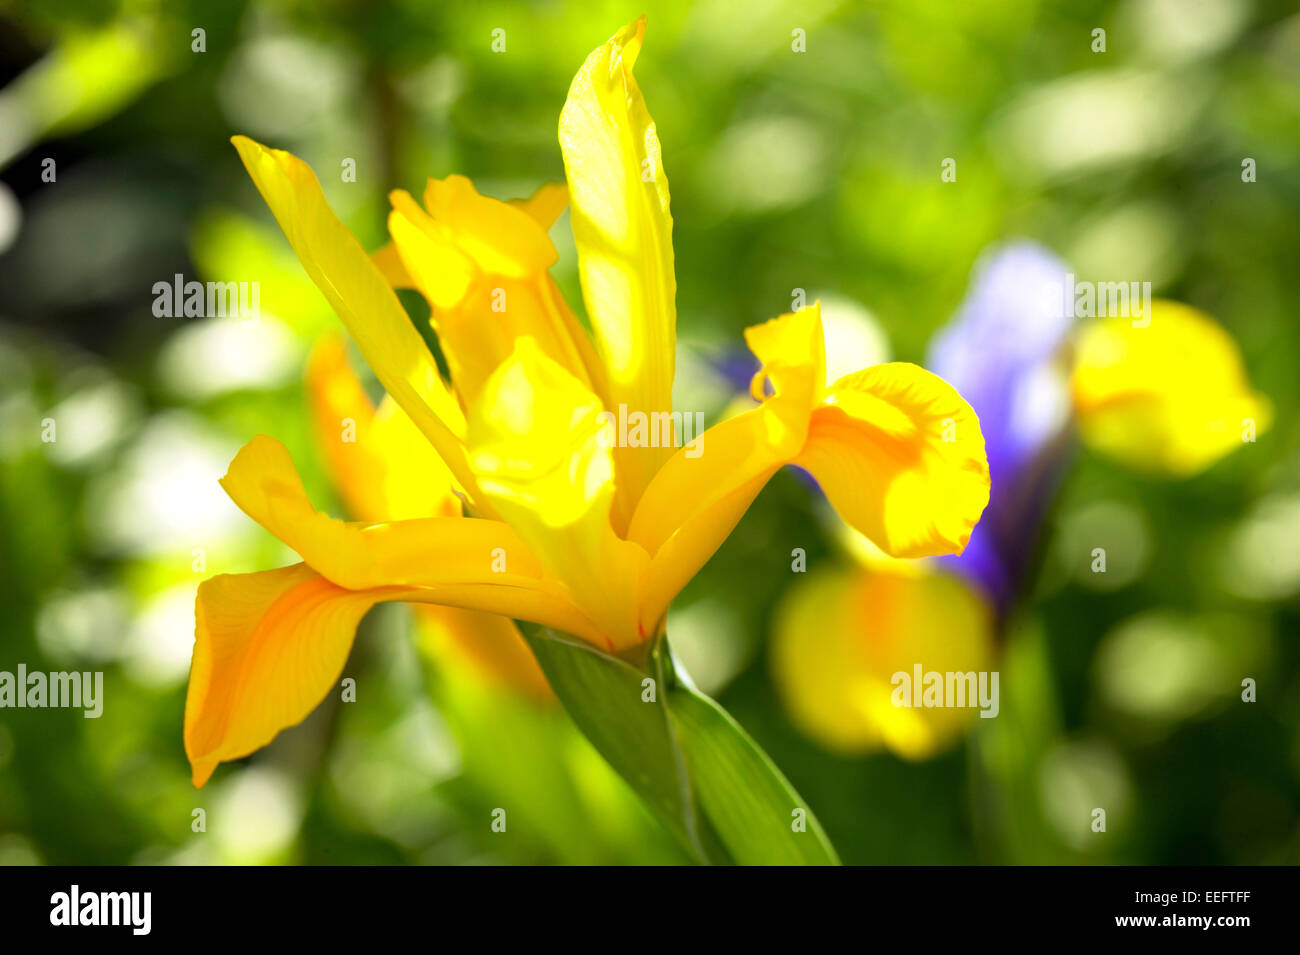 Iris Aussen Blume Blumen Bluete Botanik Empfindlich Farbe Gelb Nahaufnahme Natur Pflanze Pflanzen Stock Photo